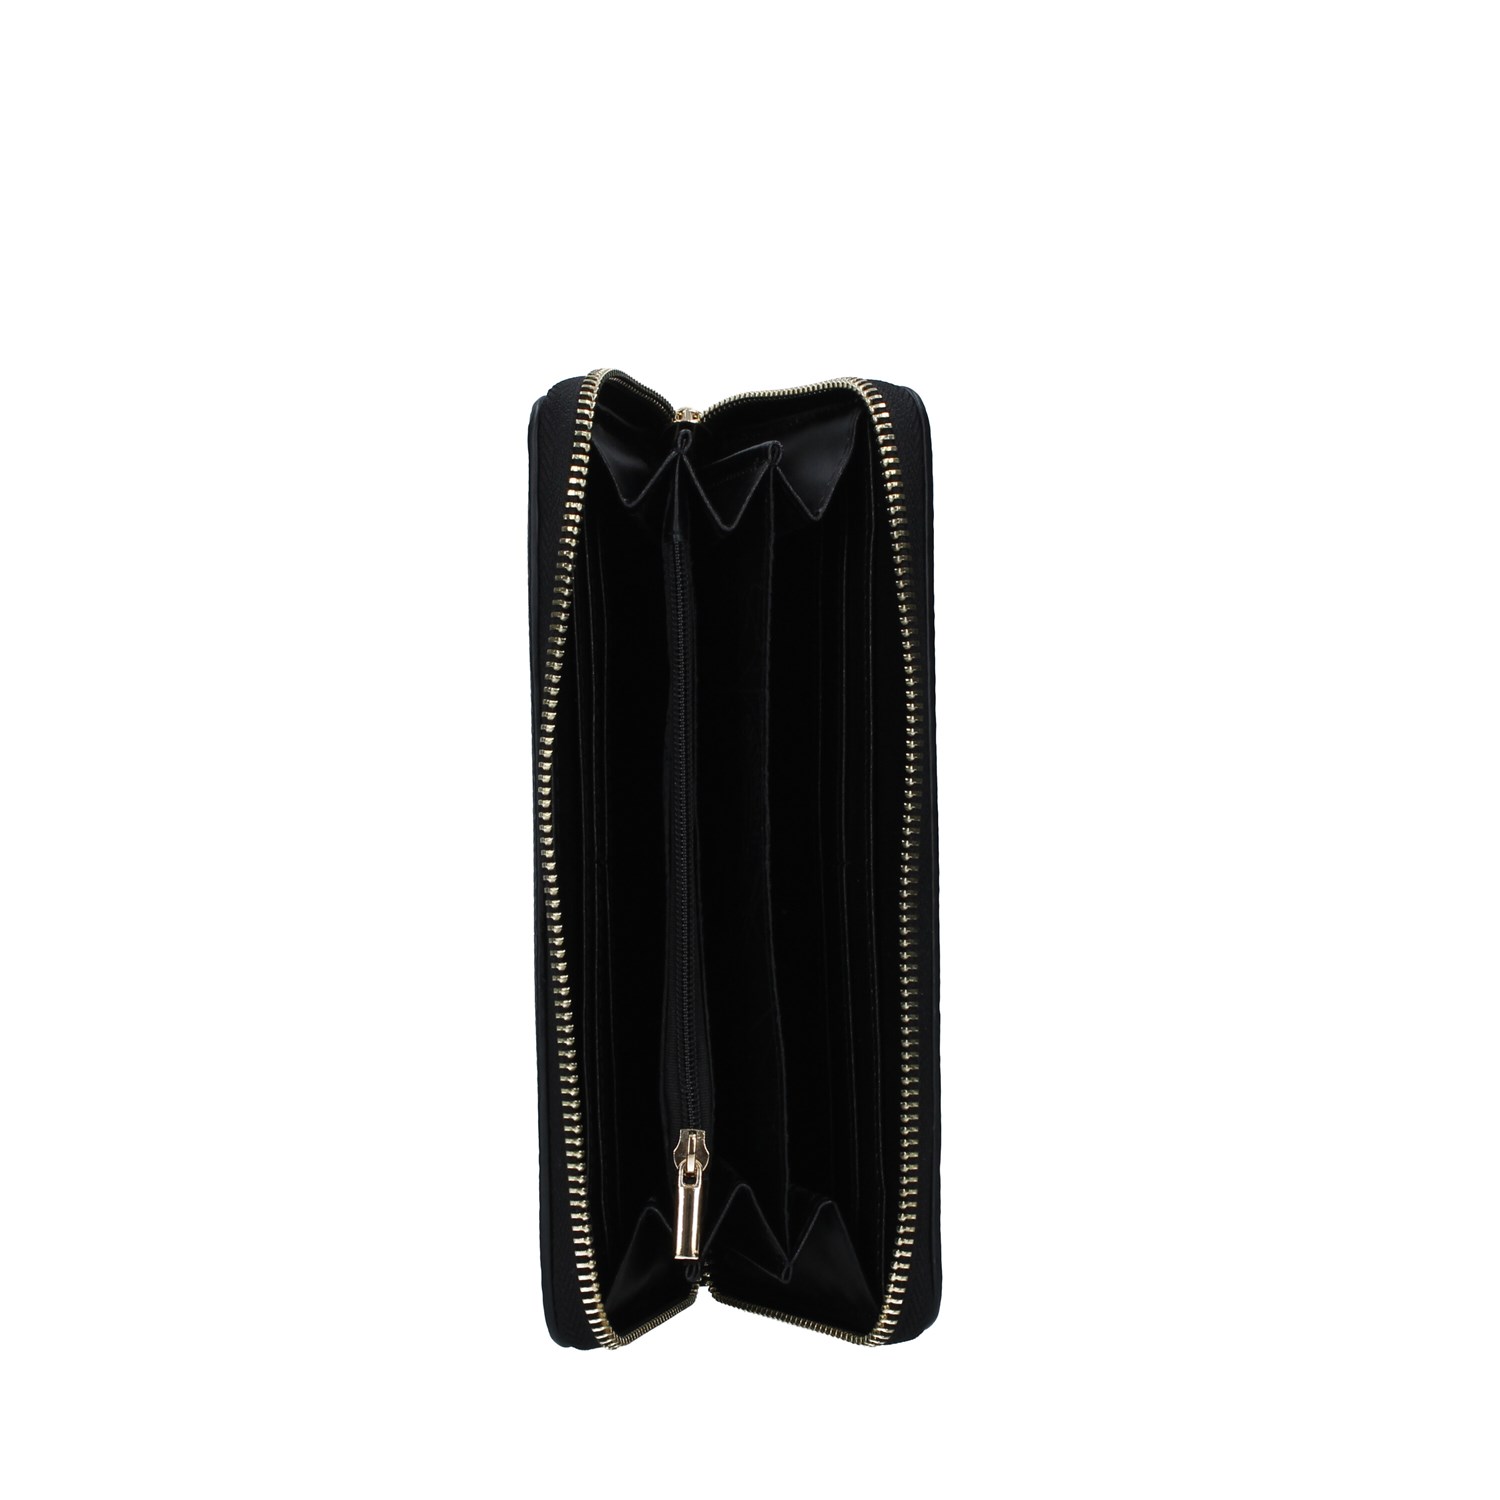 Gattinoni Roma Accessories Accessories Women's Wallets BLACK BINCD7963WV